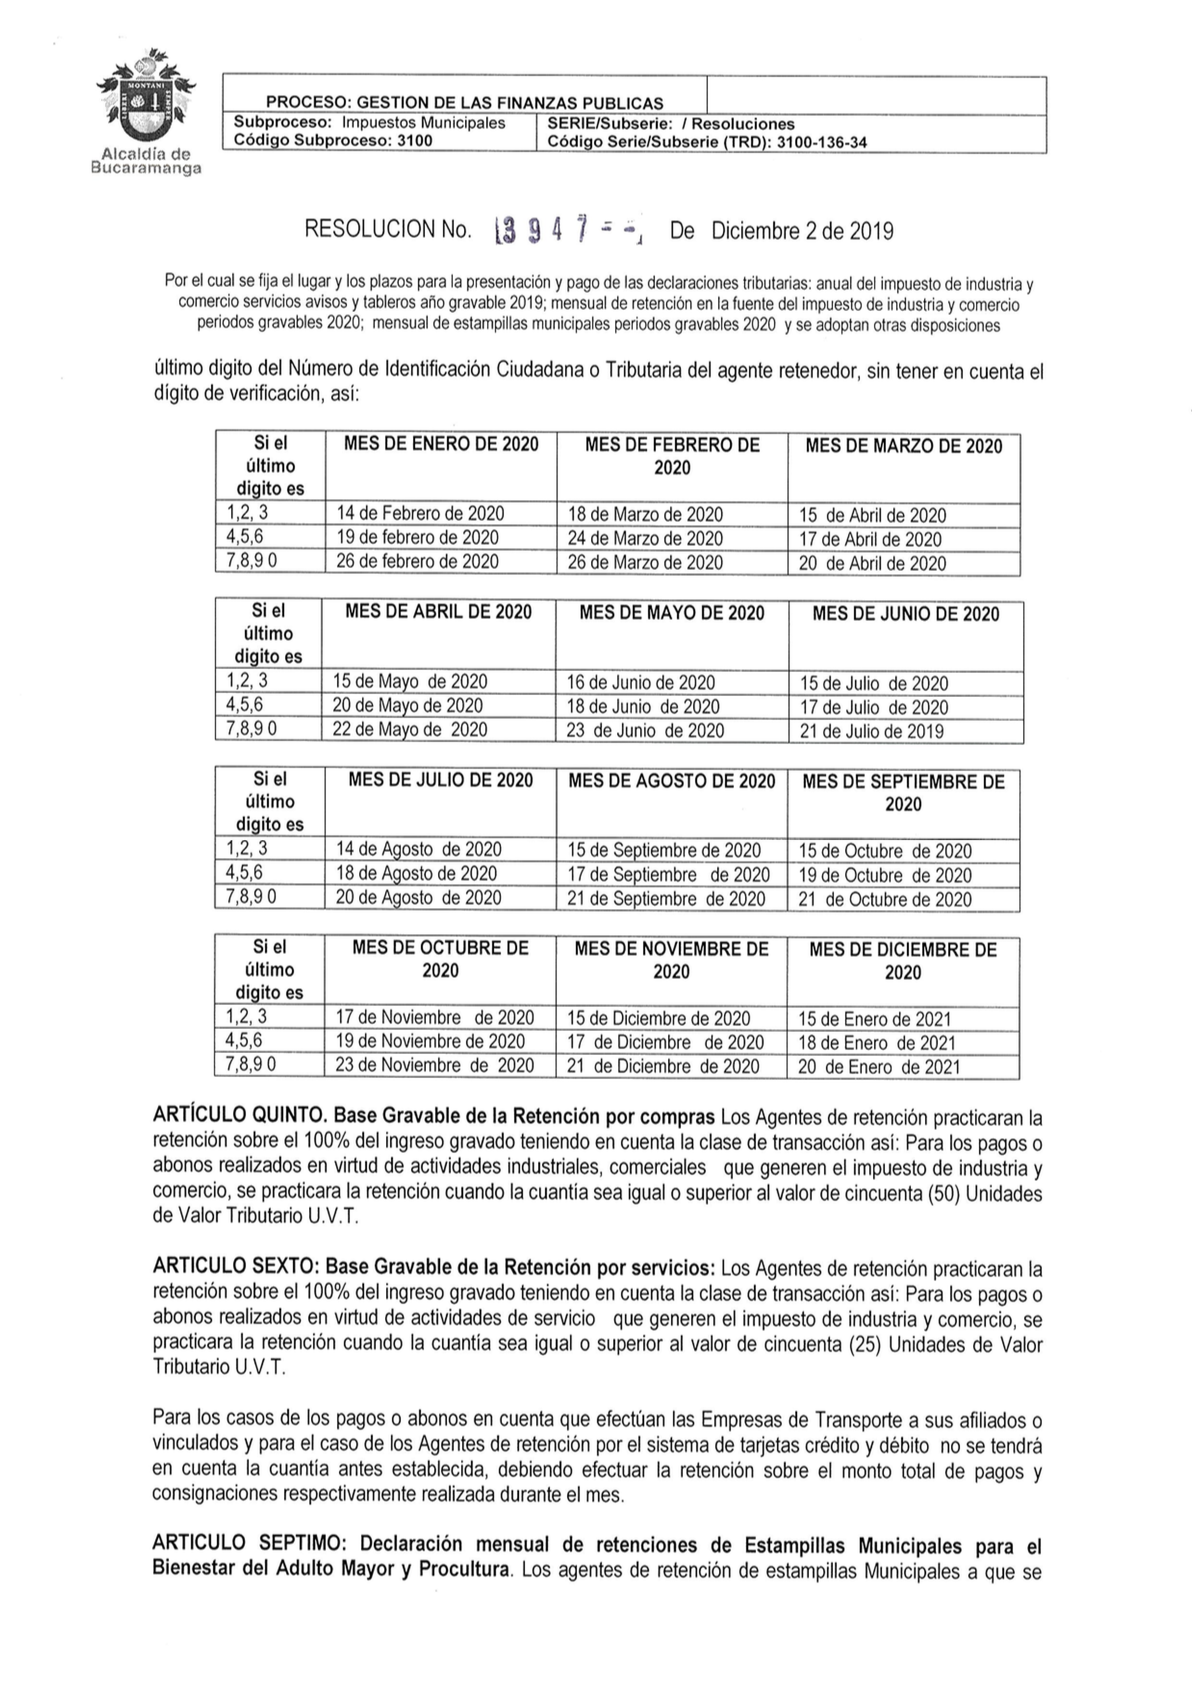 Descargar Impuesto Predial, Impuesto Industria y Comercio Bucaramanga 2020 